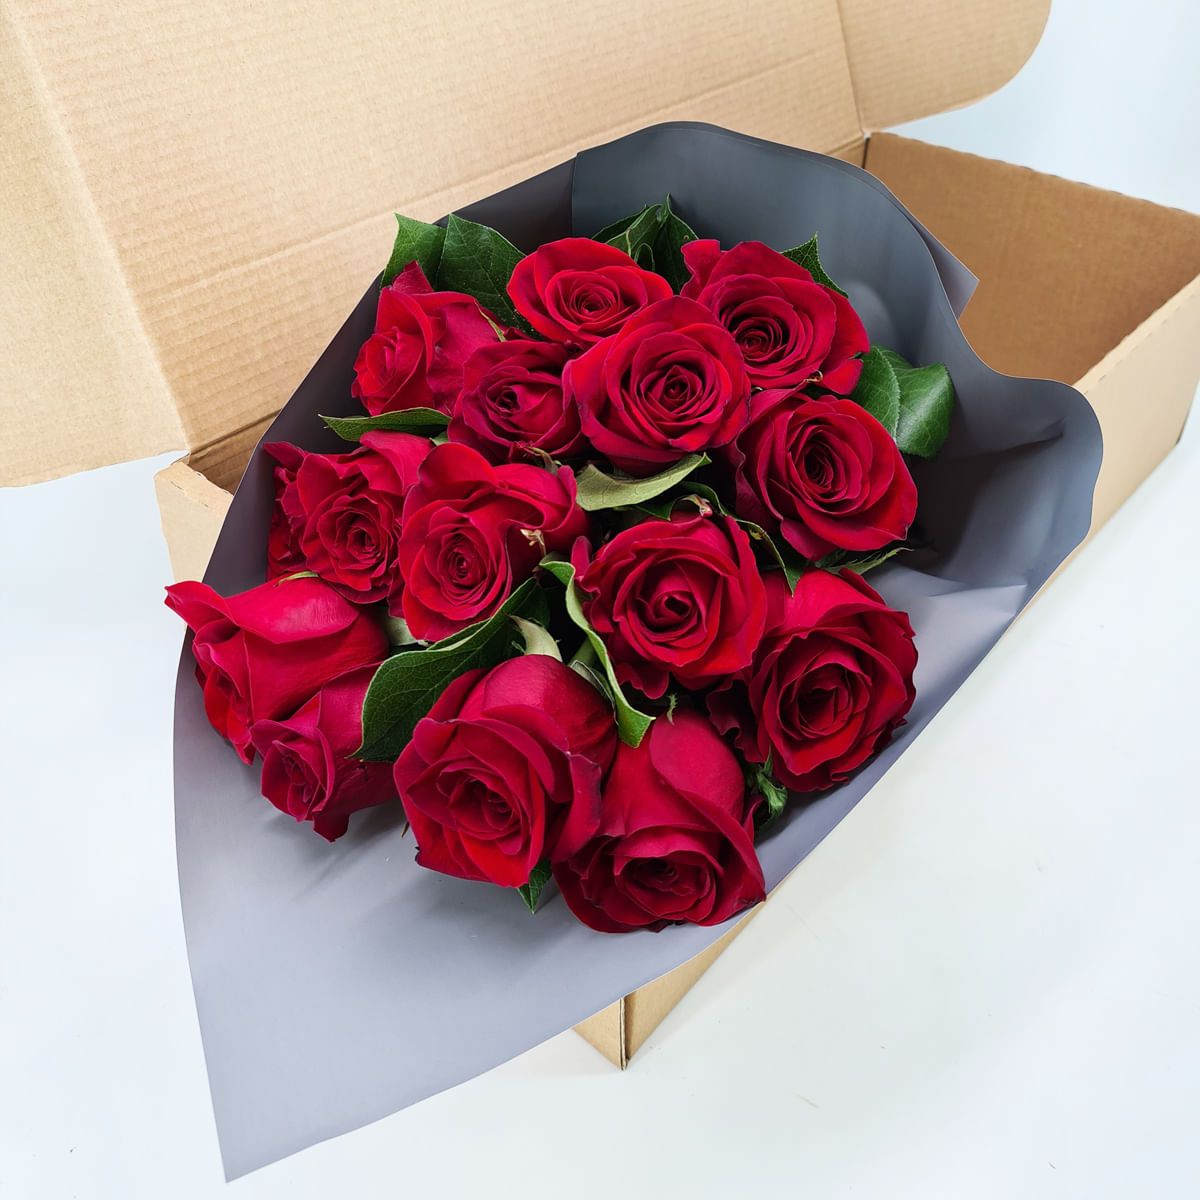 Buchet de 15 trandafiri rosii in cutie Floria